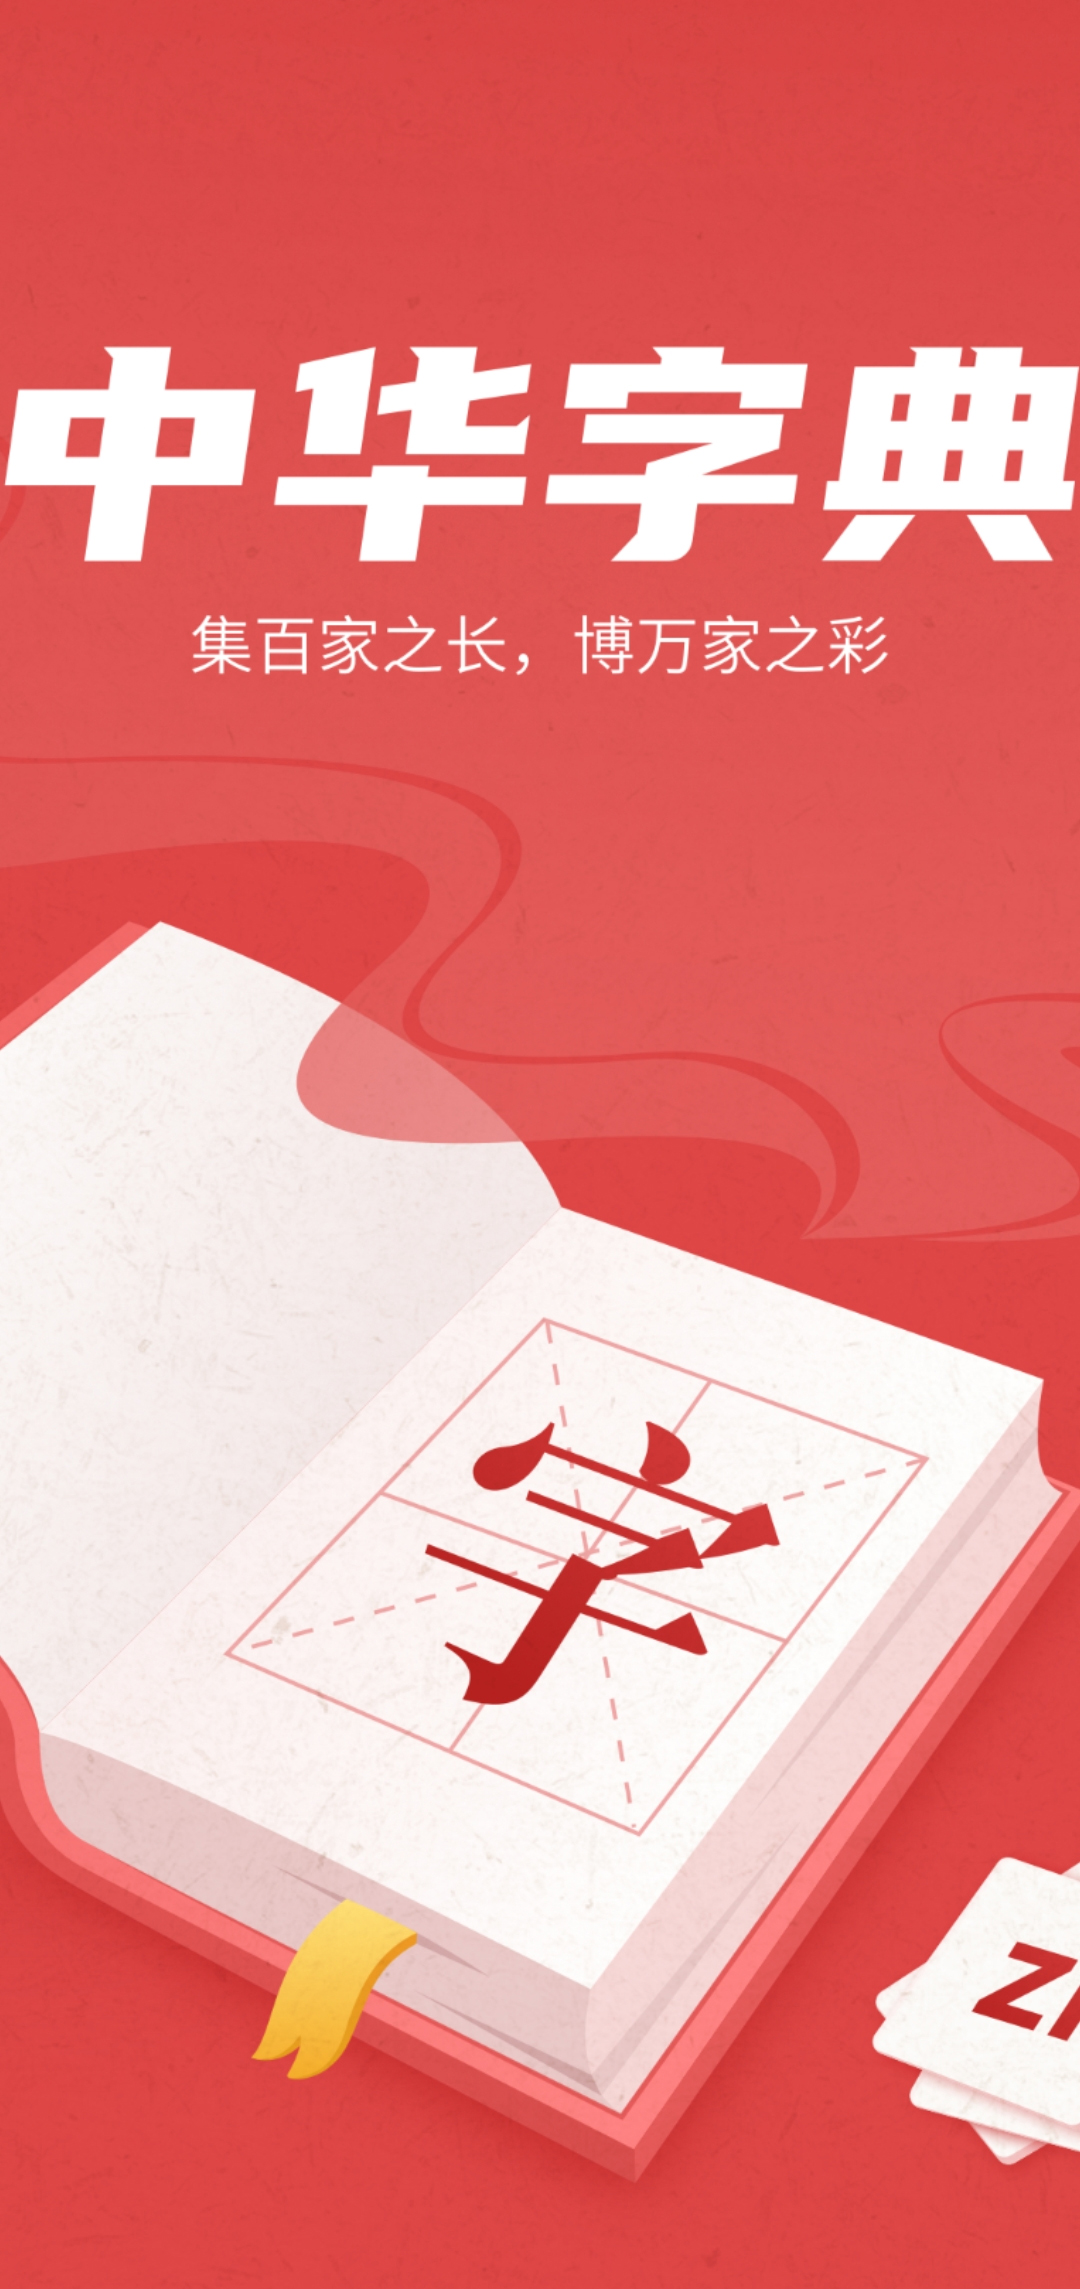 中华字典在线查字软件